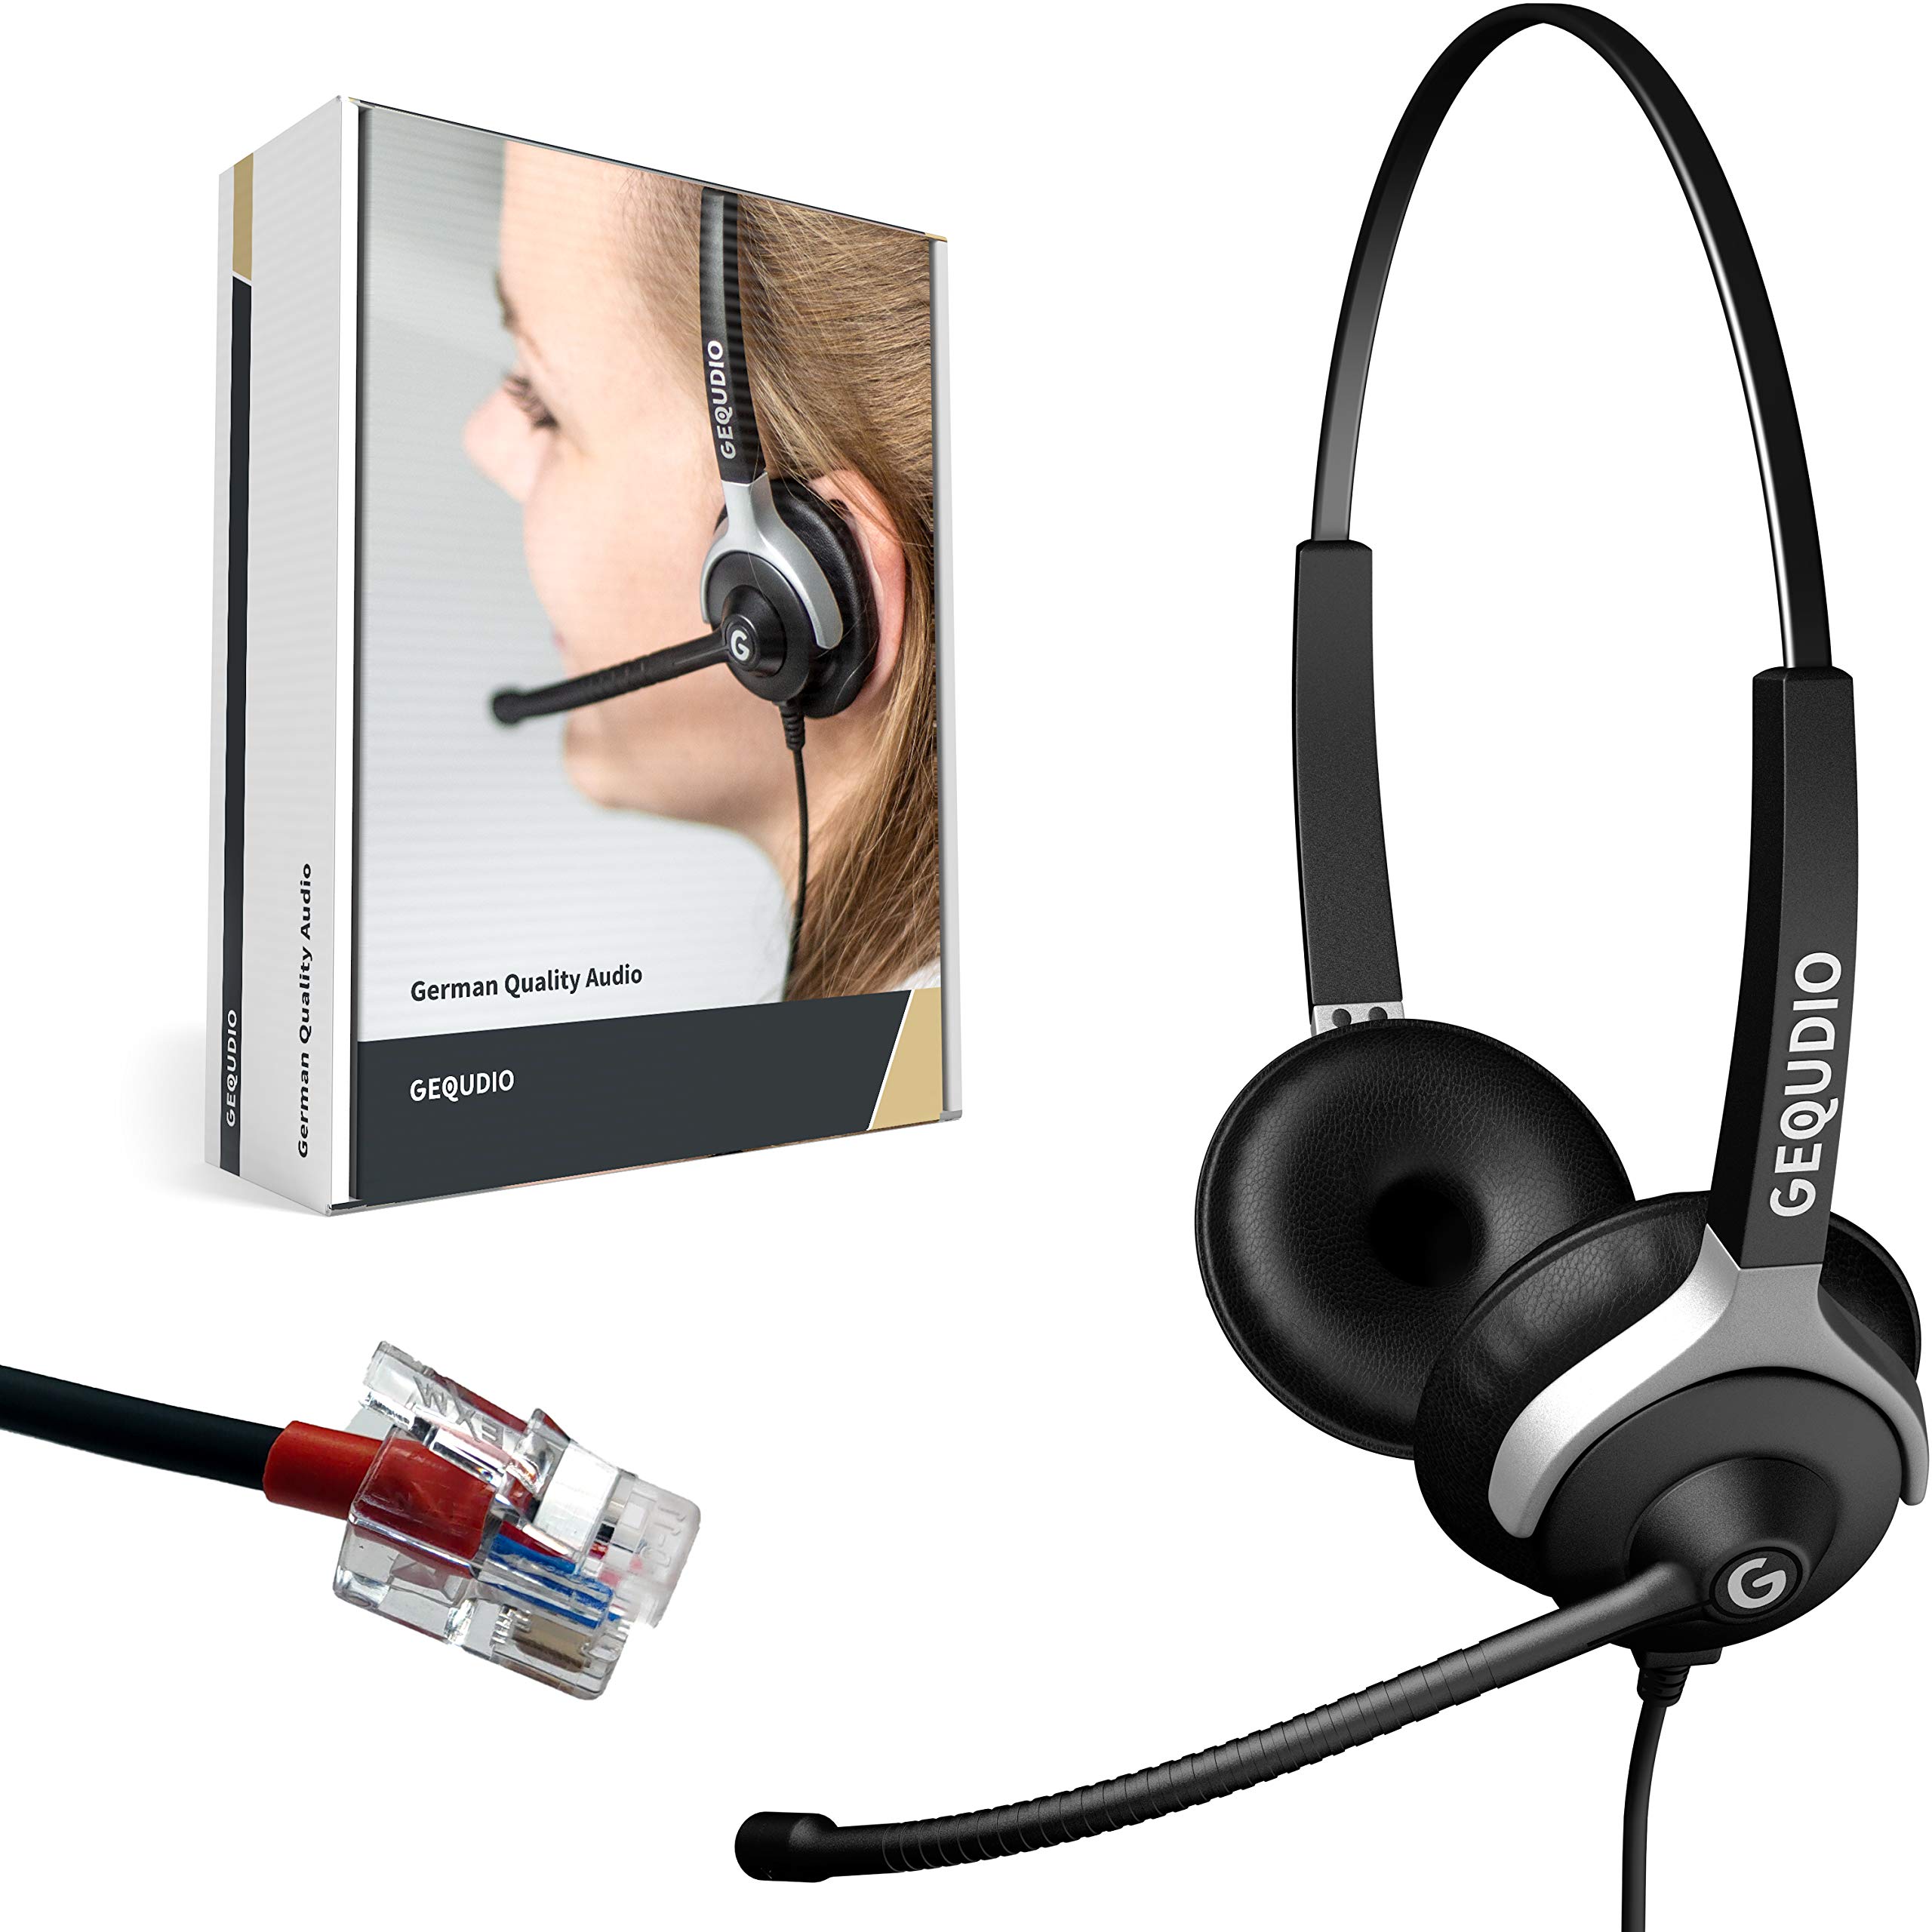 GEQUDIO Headset kompatibel mit Yealink, Snom, Avaya, Grandstream Telefon - inklusive RJ Kabel - Kopfhörer & Mikrofon mit Ersatz Polster - besonders leicht 80g (2-Ohr)